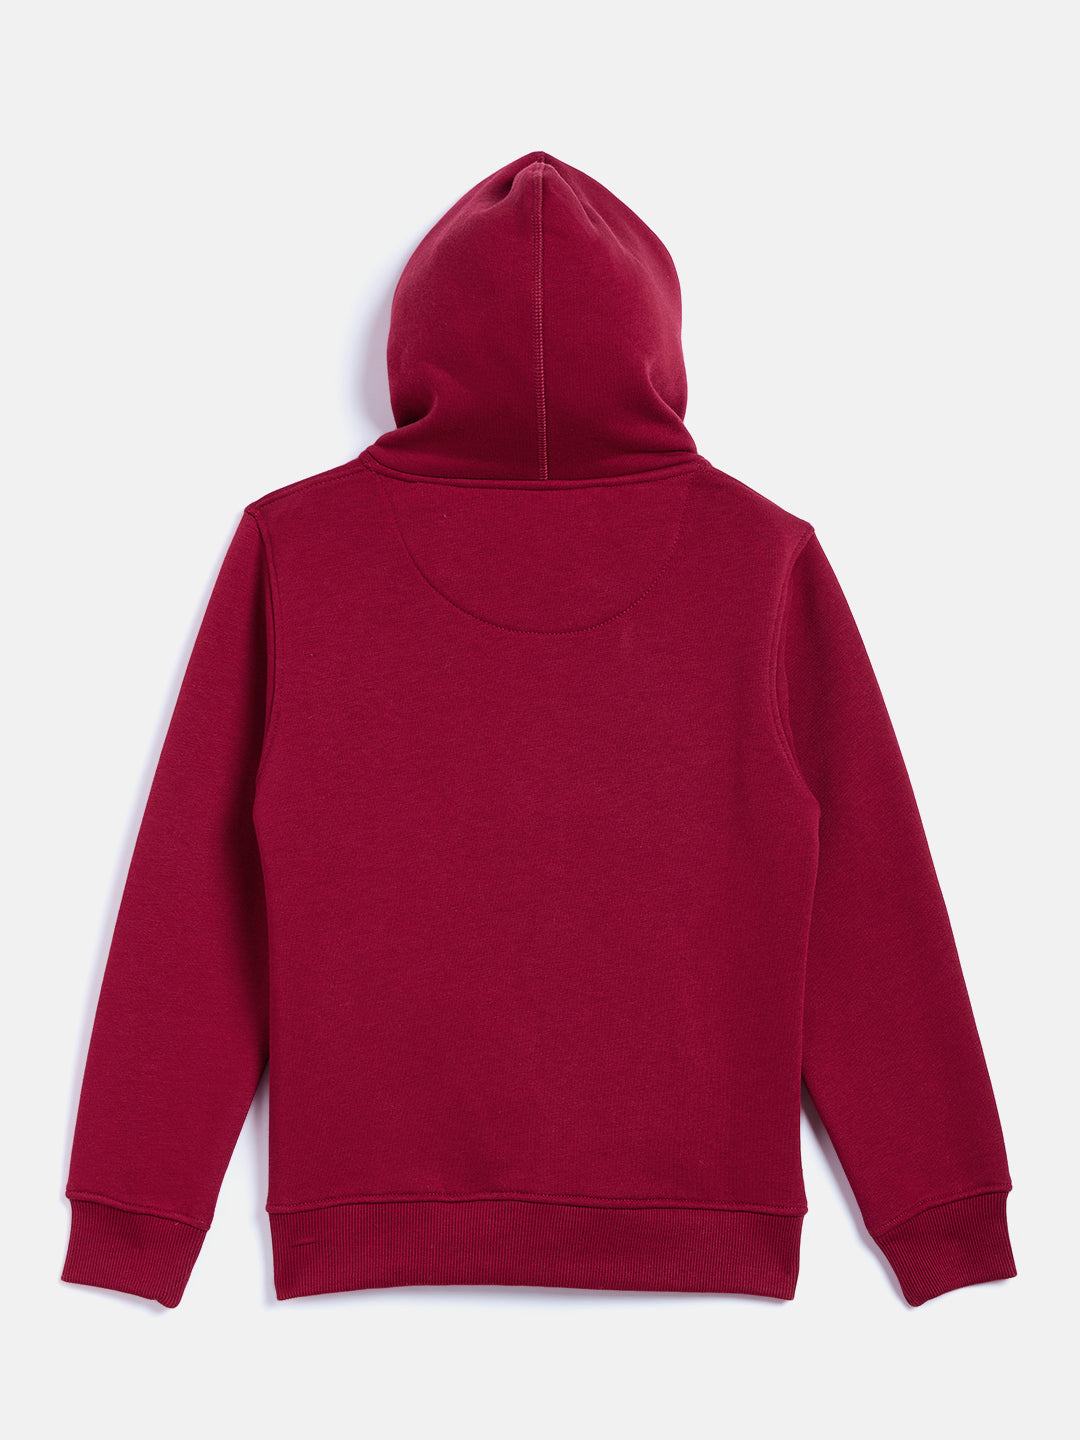 Maroon Hooded Sweatshirt - Girls Sweatshirts